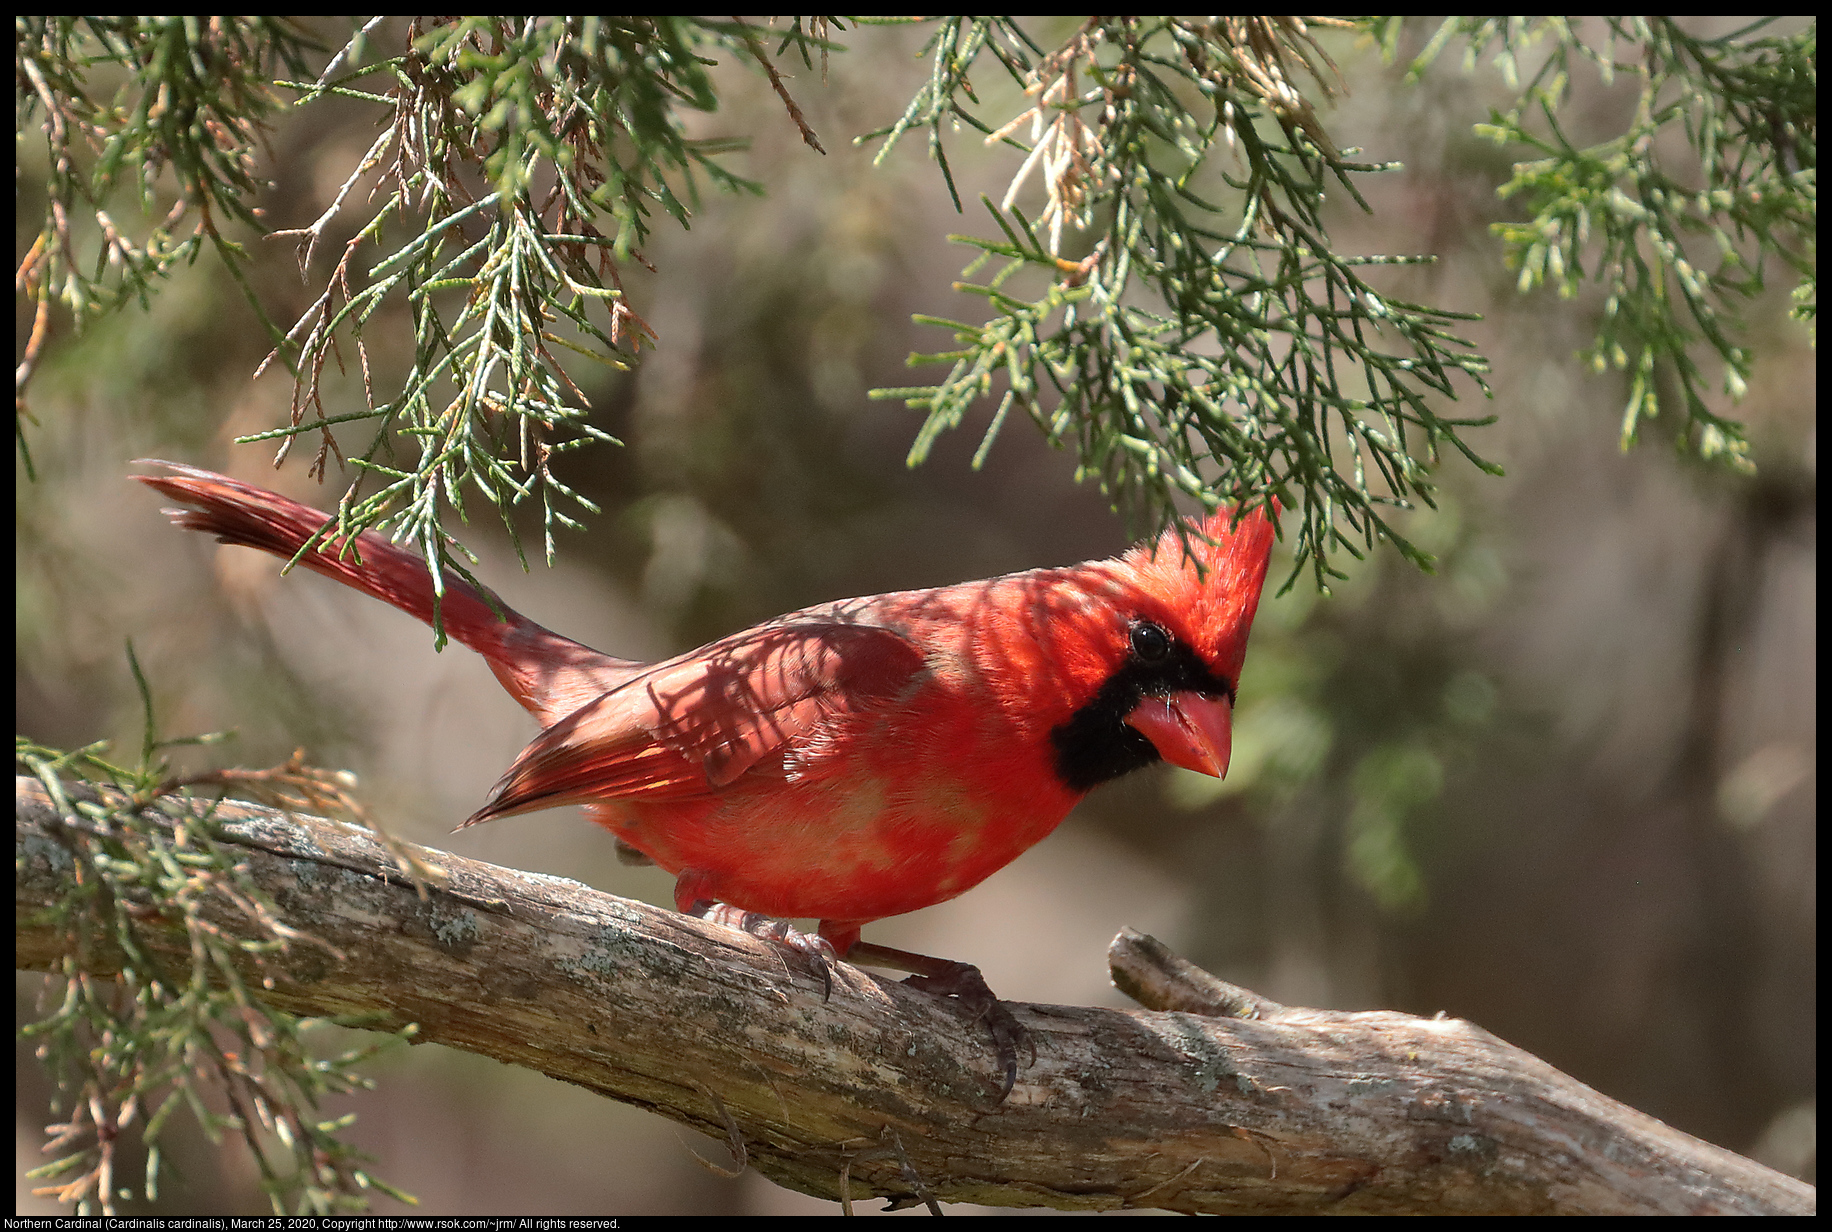 Northern Cardinal (Cardinalis cardinalis), March 25, 2020